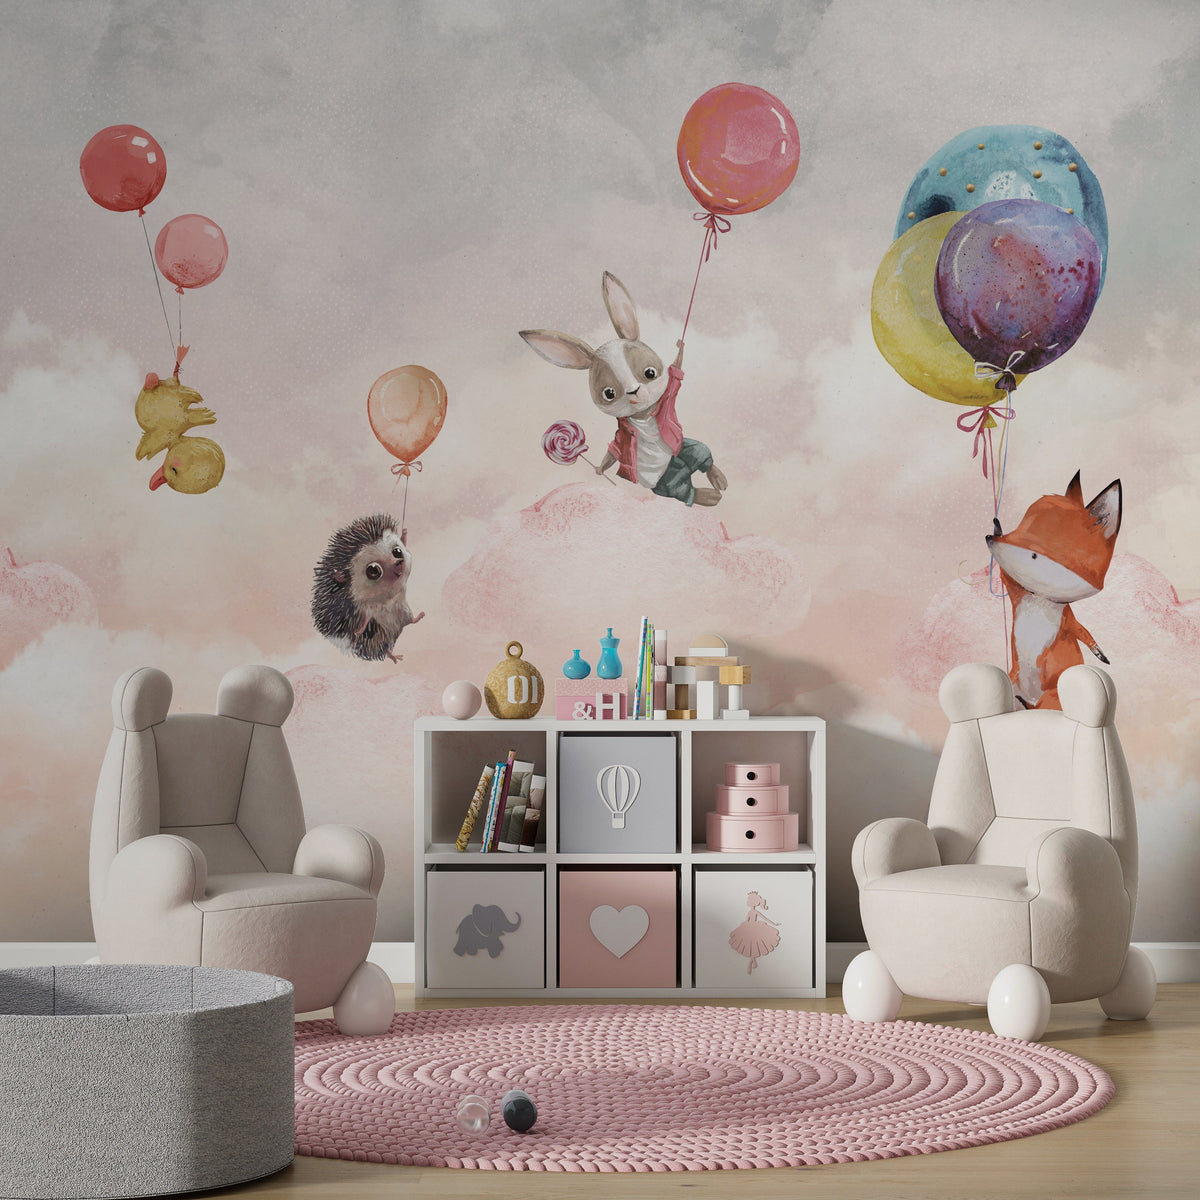 Animals on Balloon - Kids Nursery Wallpaper Mural